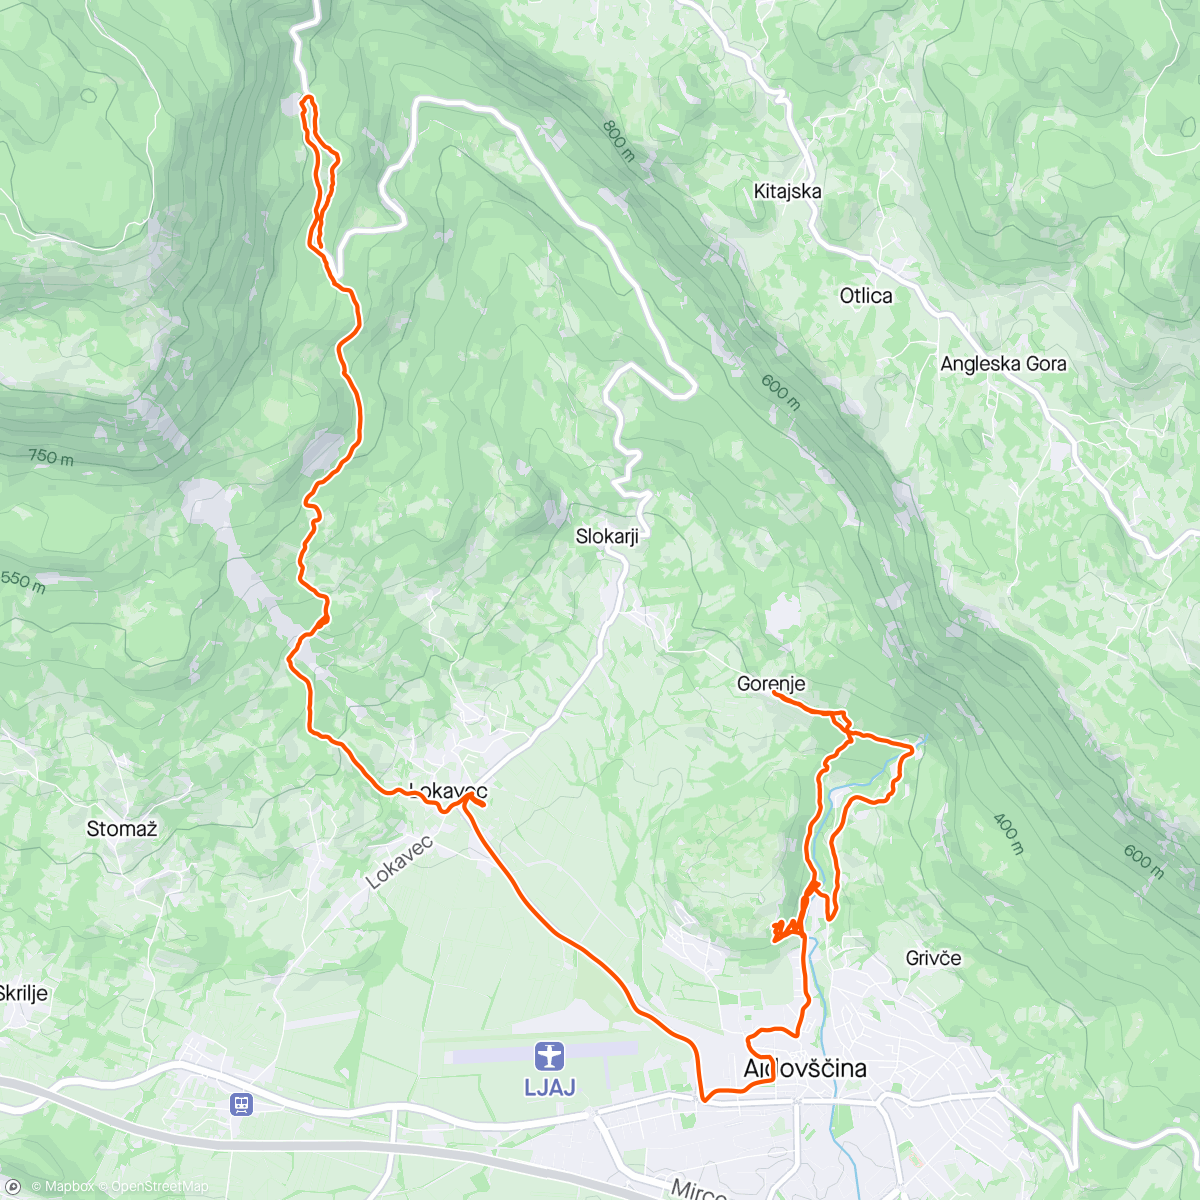 Mappa dell'attività Oggi trasferta in Slovenia a vedere dei trail nuovi…
In ottima compagnia di GIANCARL e David (piacevole scoperta)…
#orbea #unno #norco #mtb #enduro #trail #pump #pumptrack